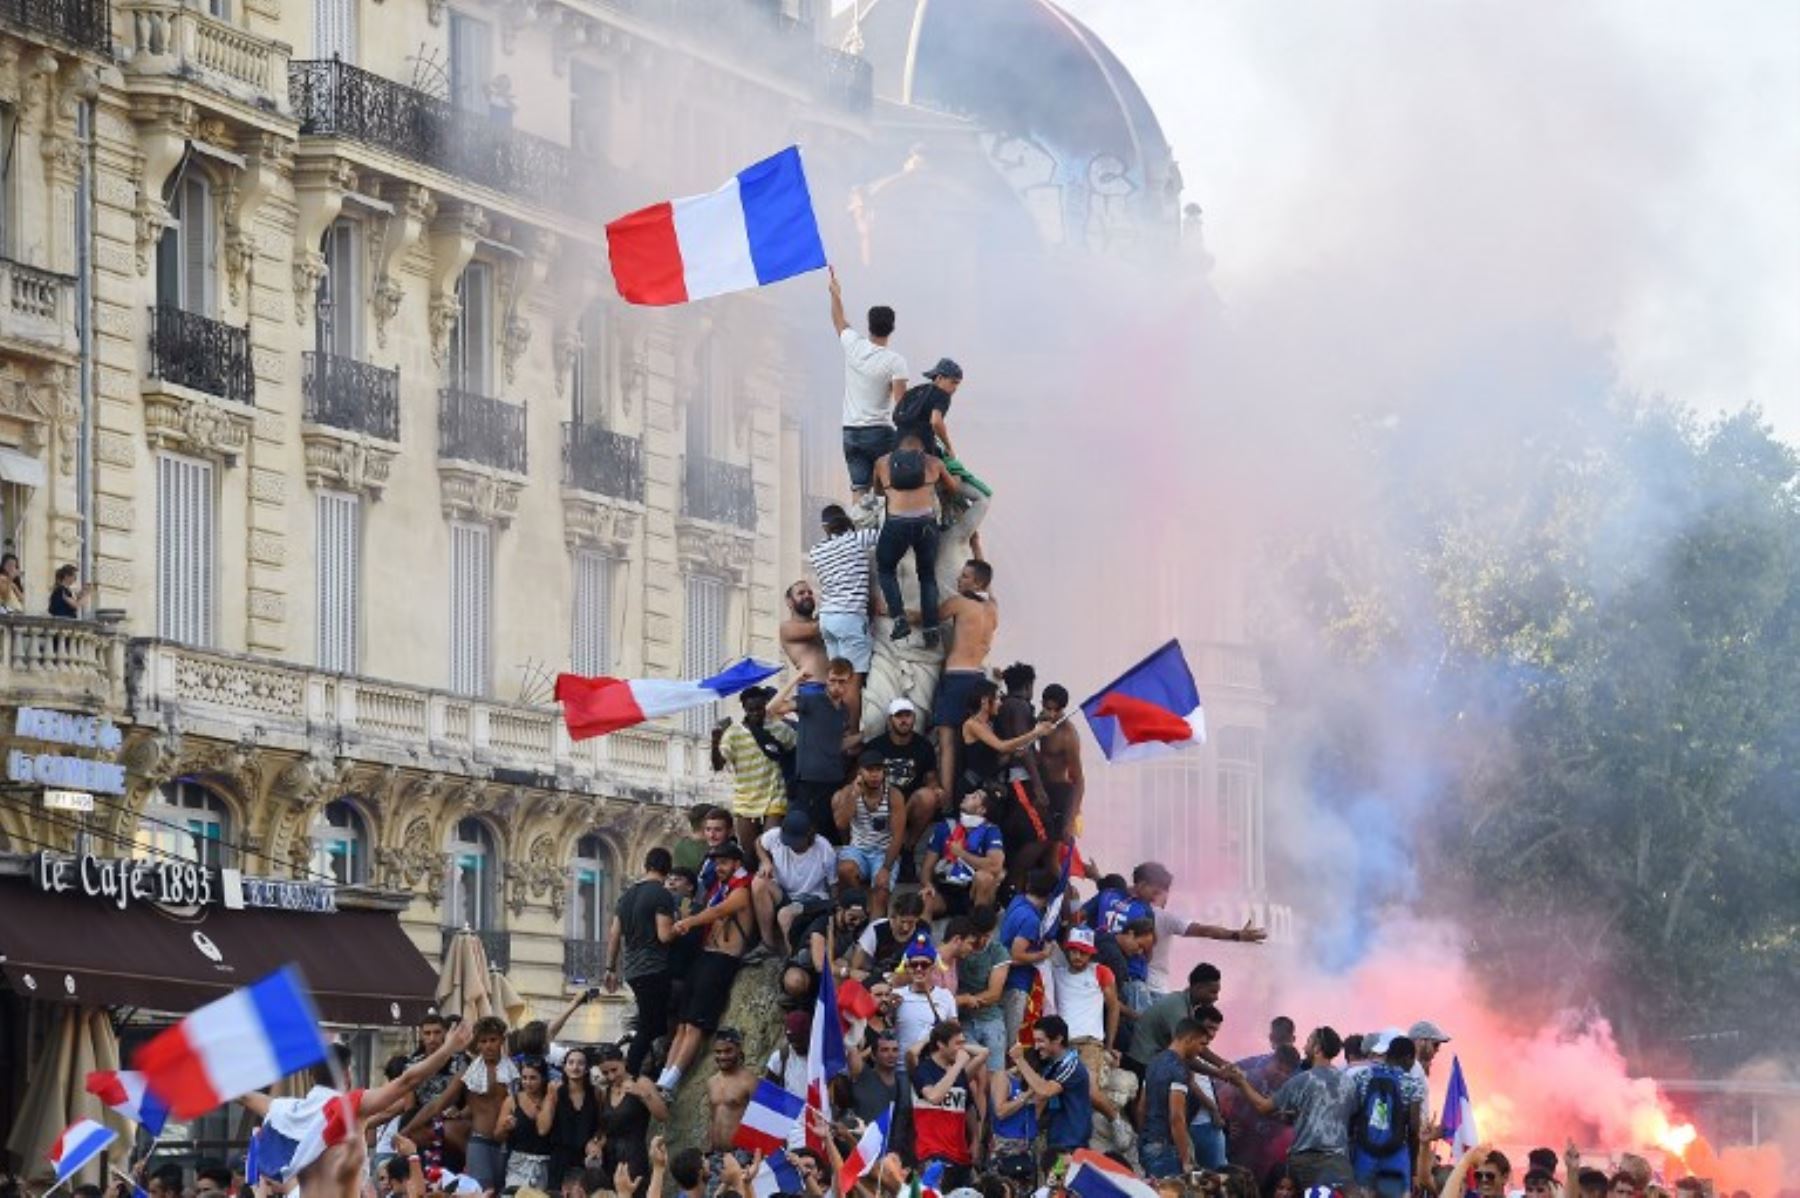 Partidarios de Francia celebran después de que Francia ganó el partido de fútbol final de la Copa Mundial Rusia 2018 entre Francia y Croacia, en Montpellier, sur de Francia.Foto:afp